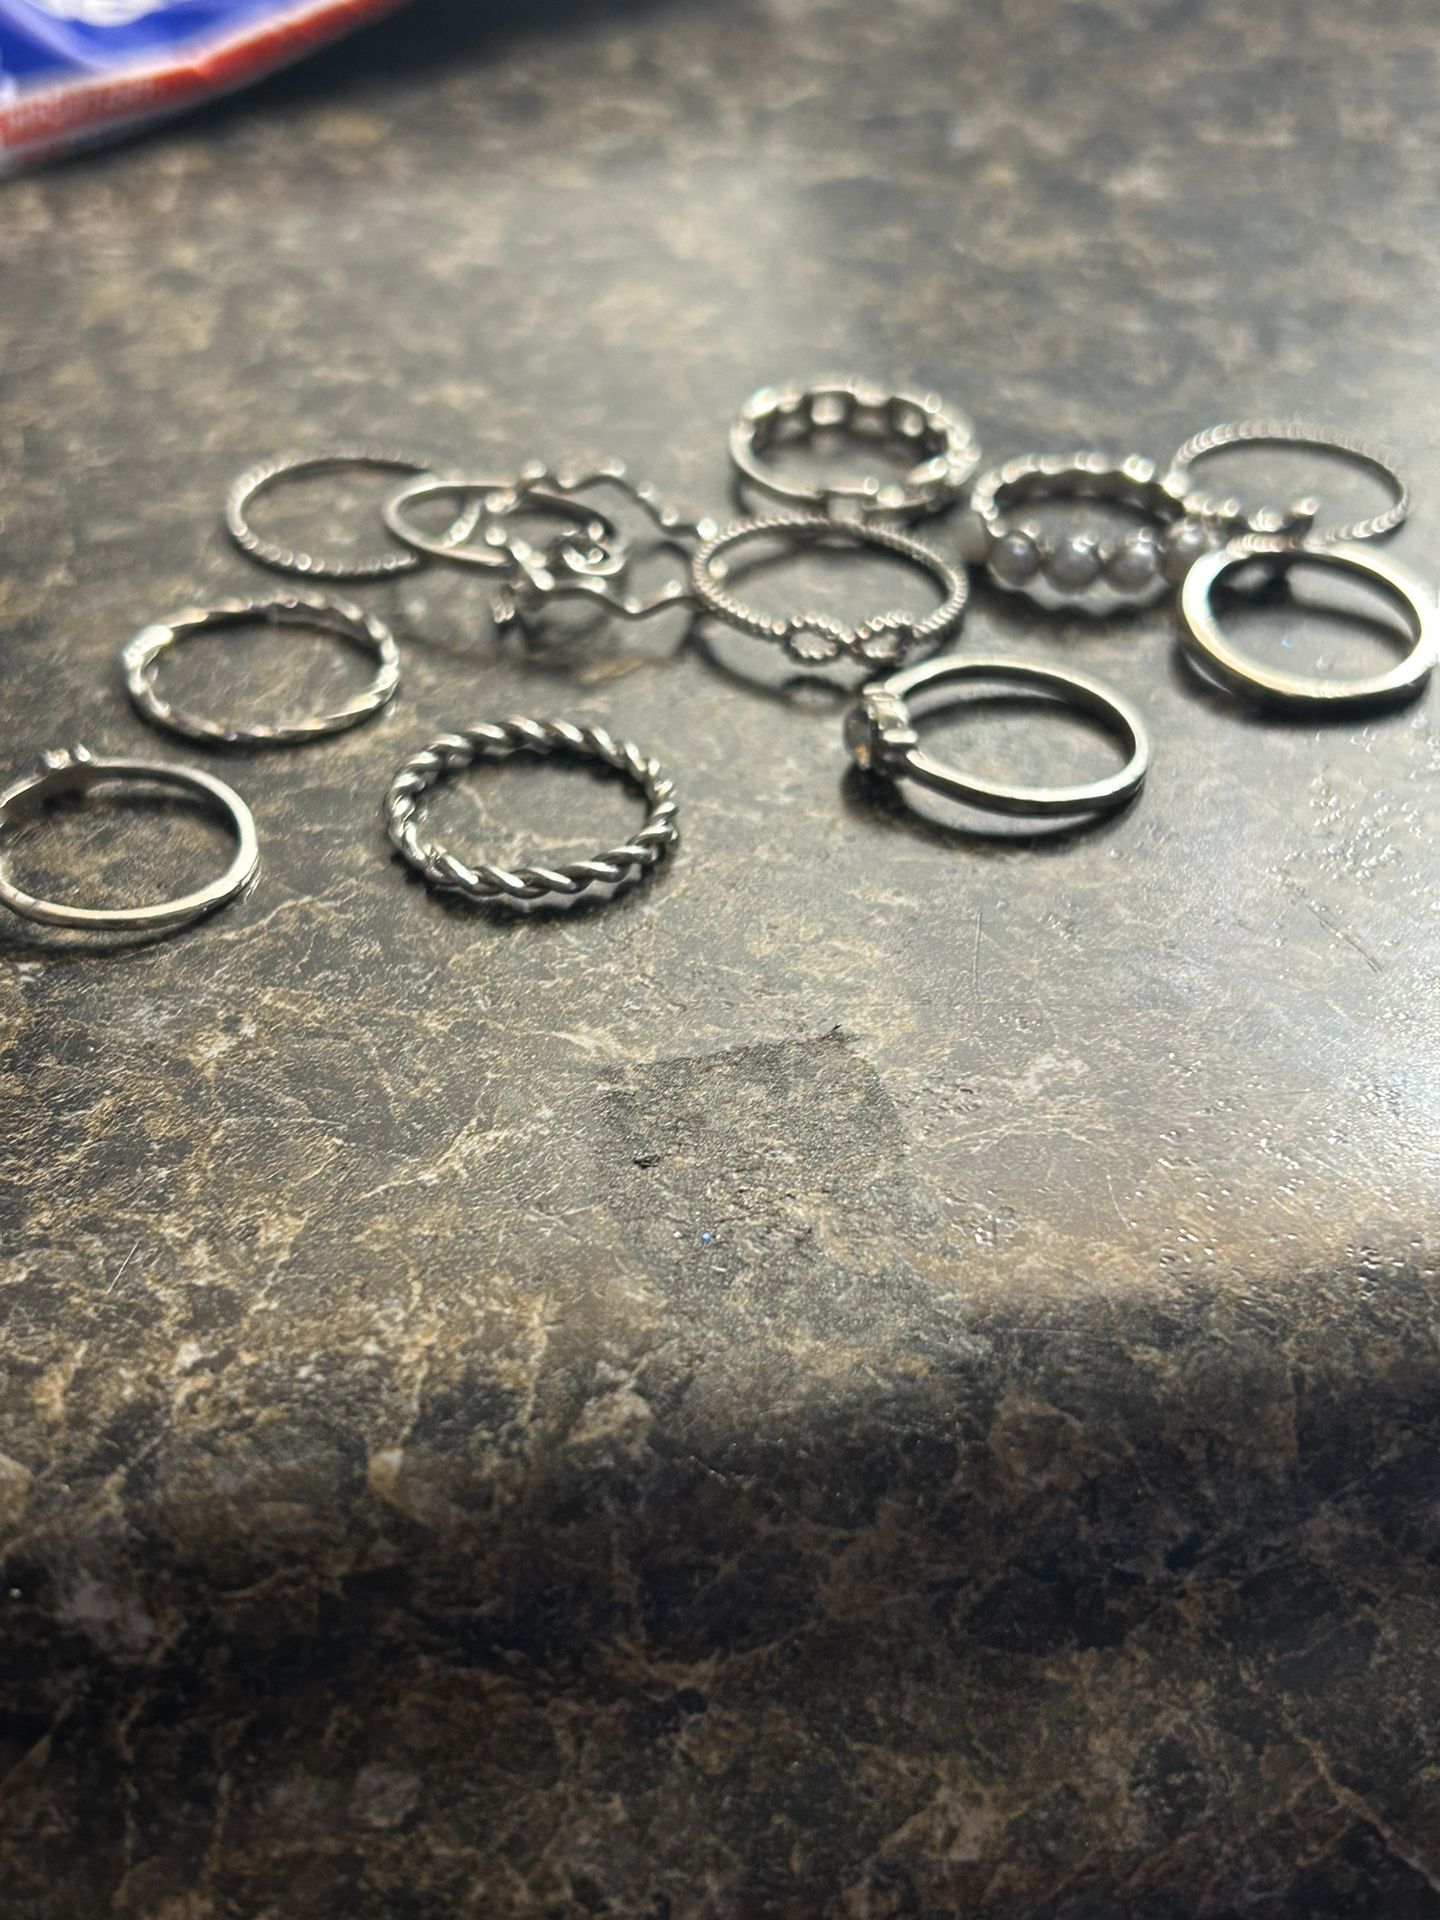 12. Women’s Silver Rings.